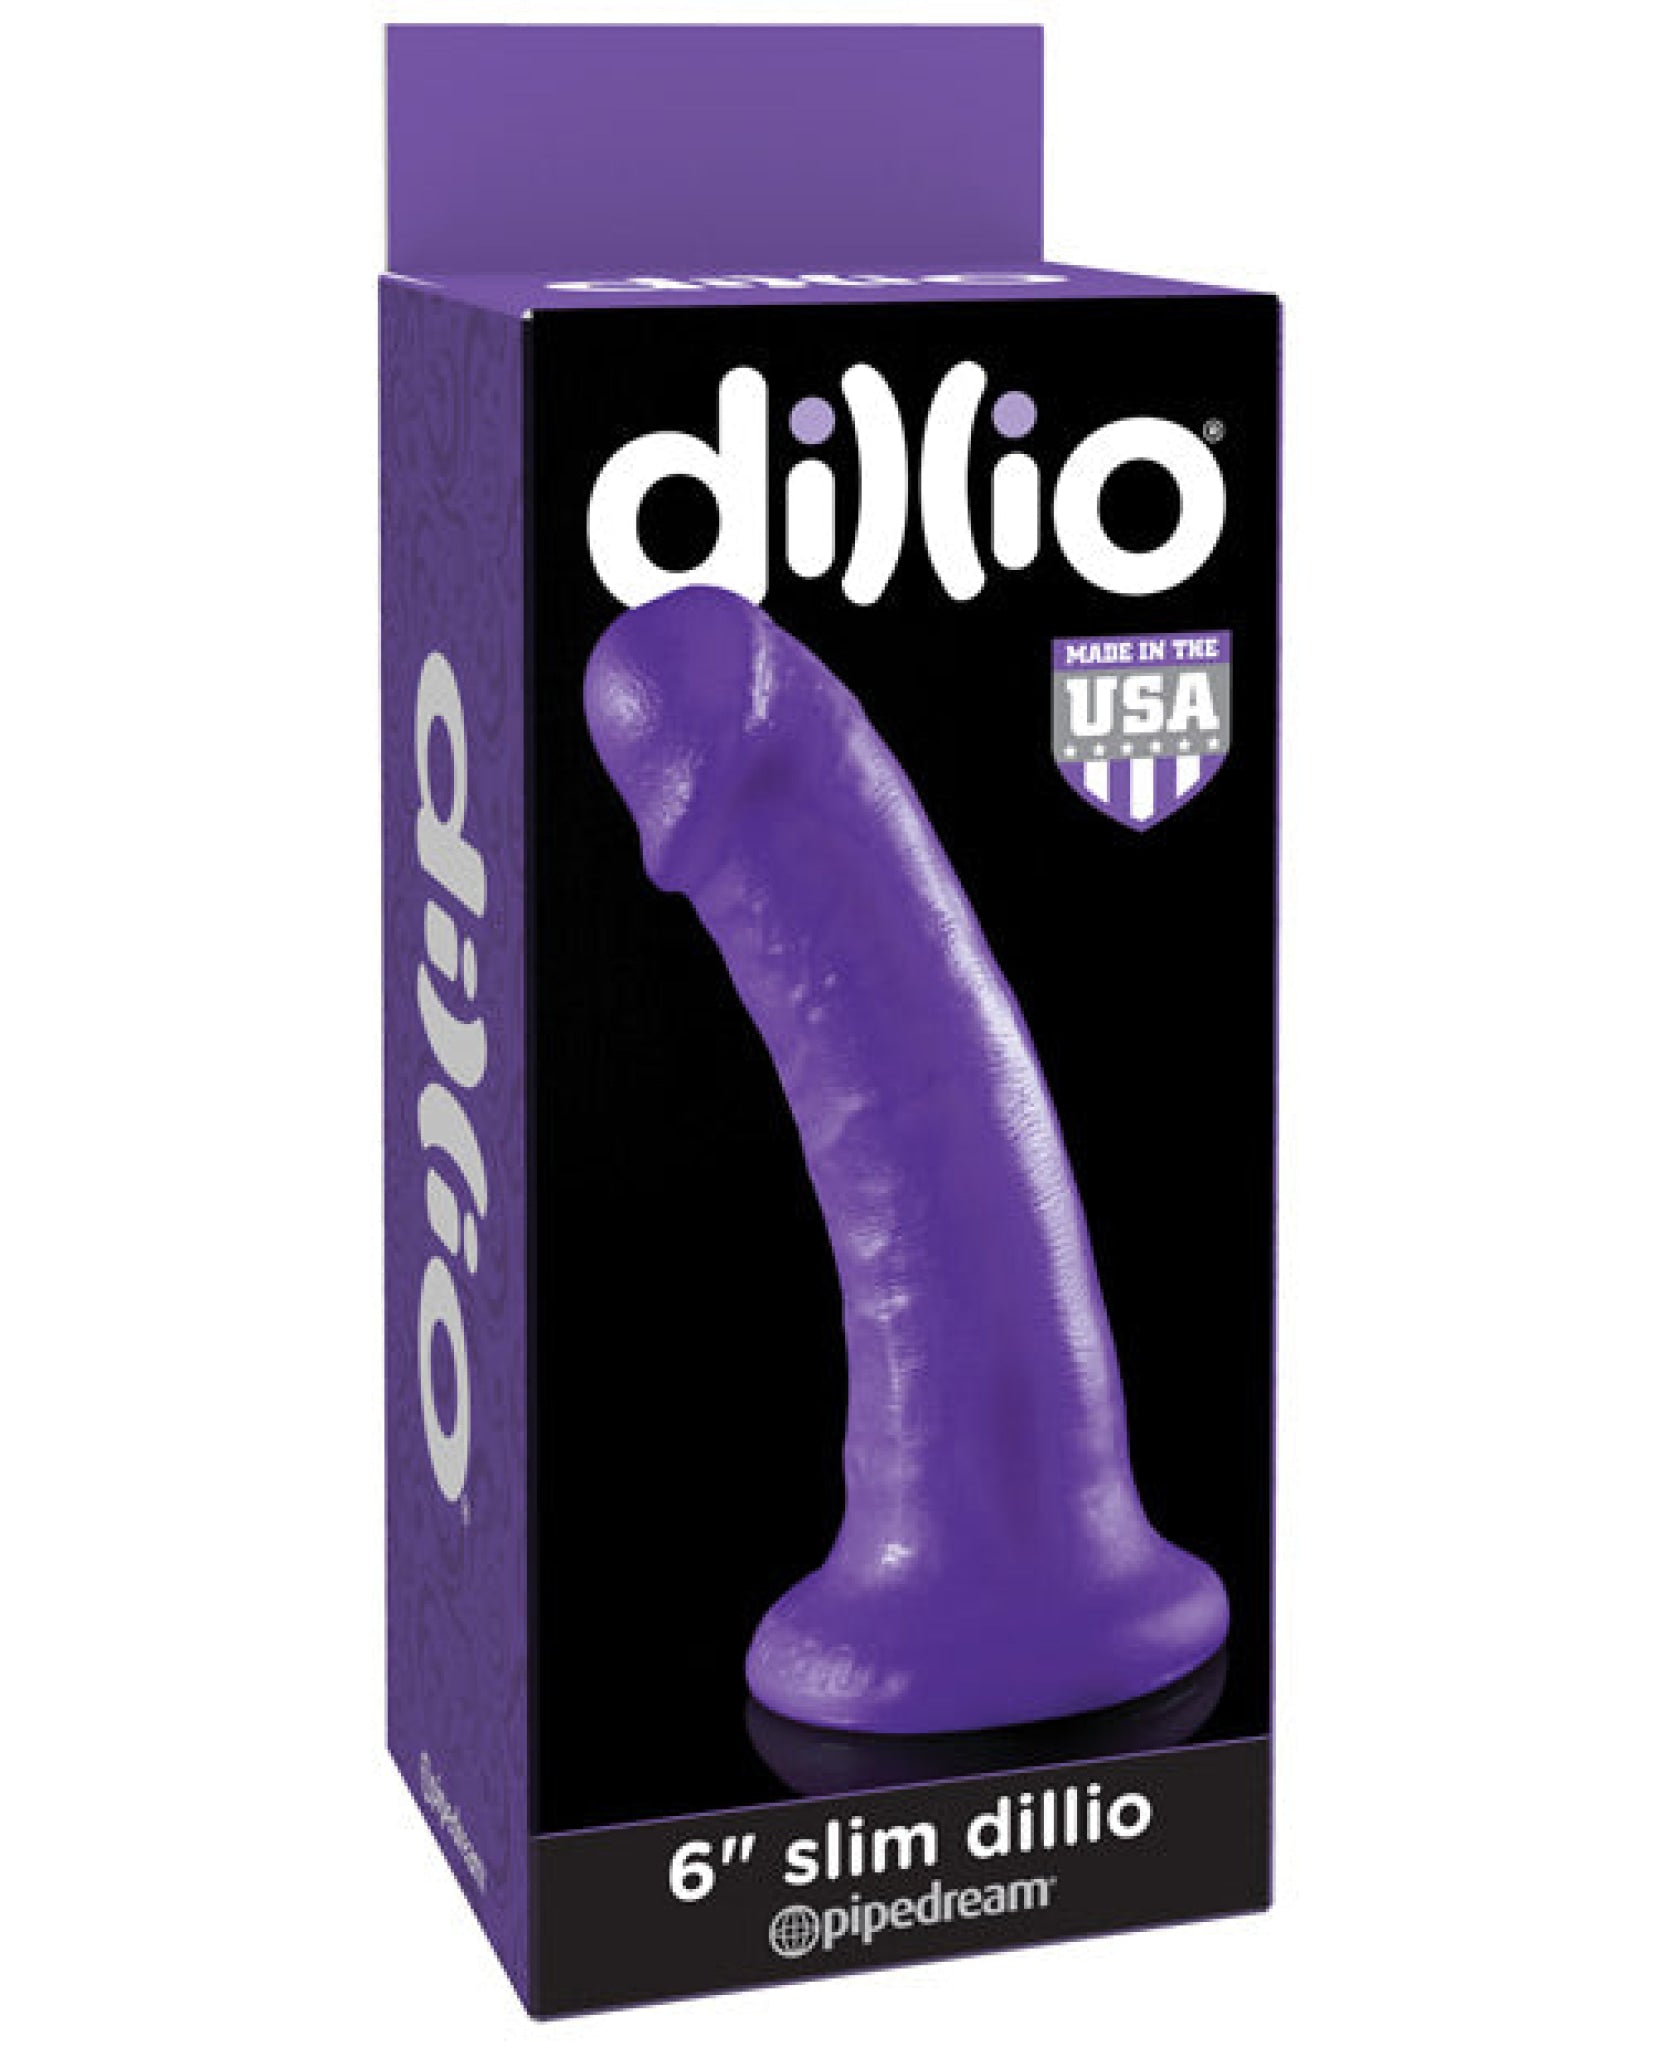 "Dillio 6"" Slim Dillio" Pipedream®